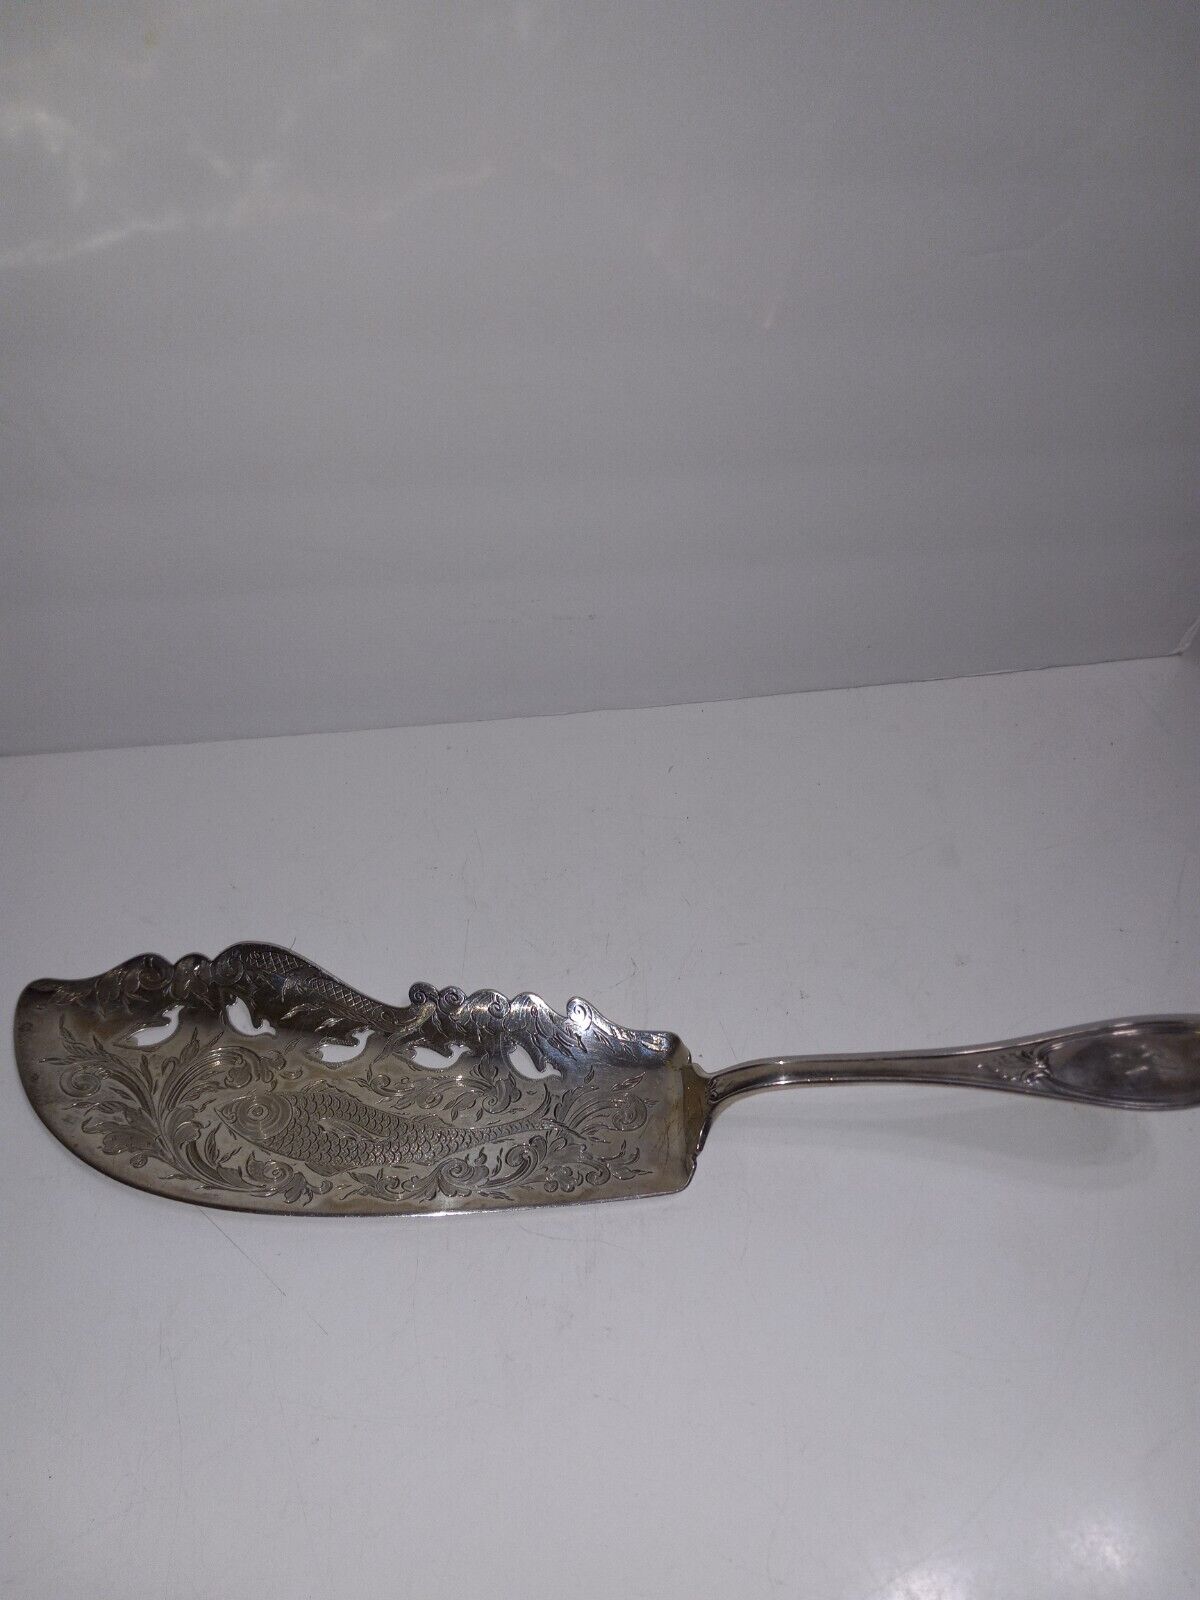 Vintage Sterling Silver J. P. Patent 1857 Fish Knife Design Server ** Rare Find